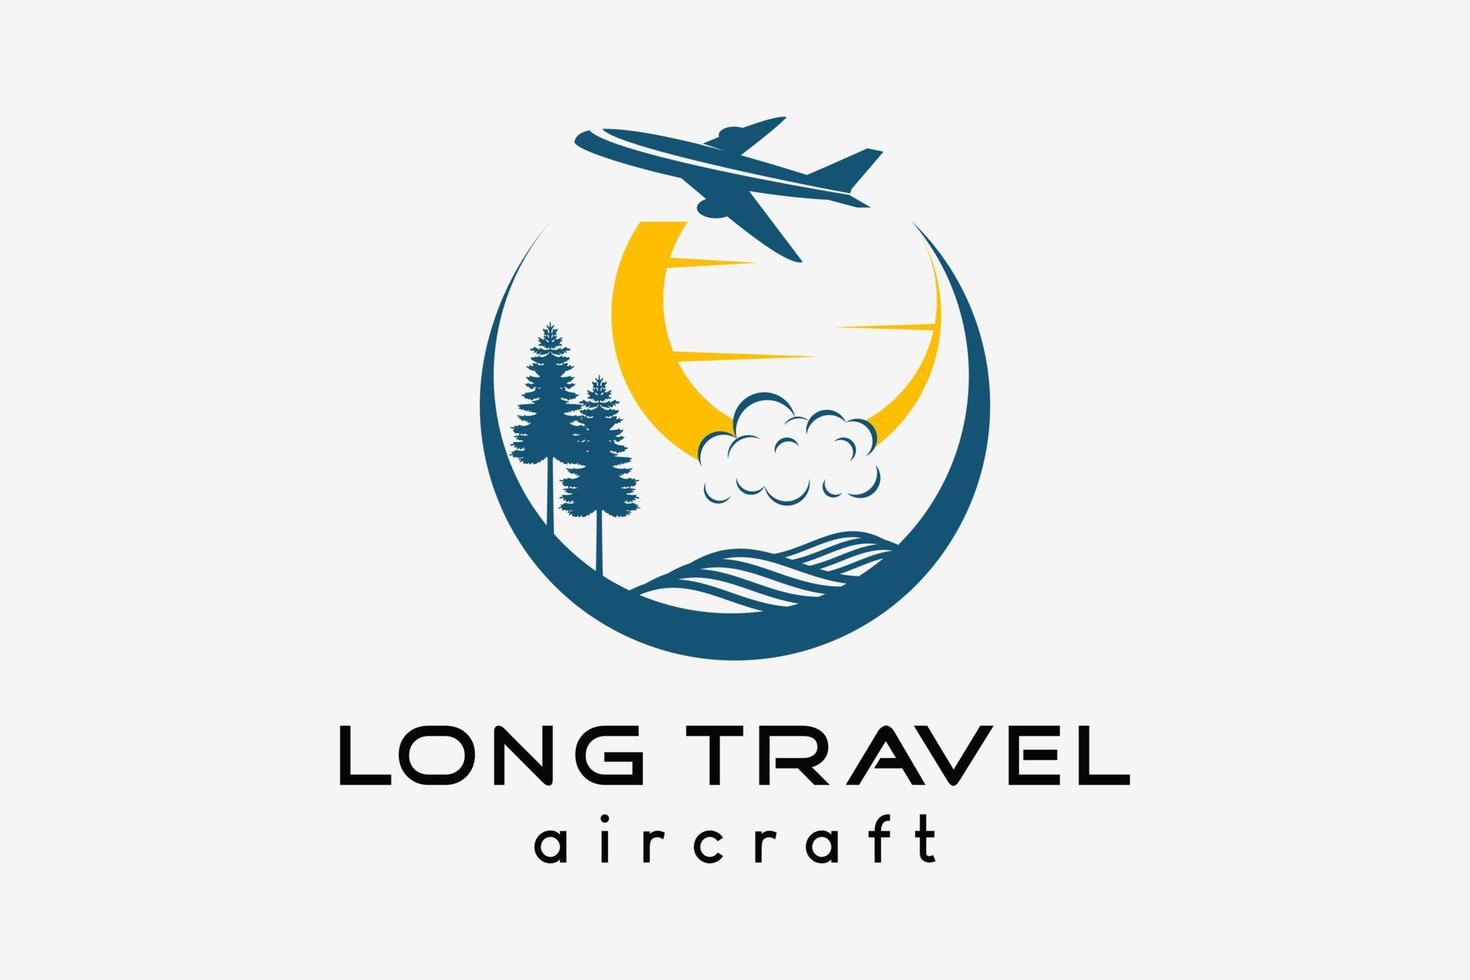 Flugzeug-Logo-Design, Tourismus-Geschäftsreise-Vektor-Illustration. Flugzeugsymbol mit Natur im kreativen Konzept vektor